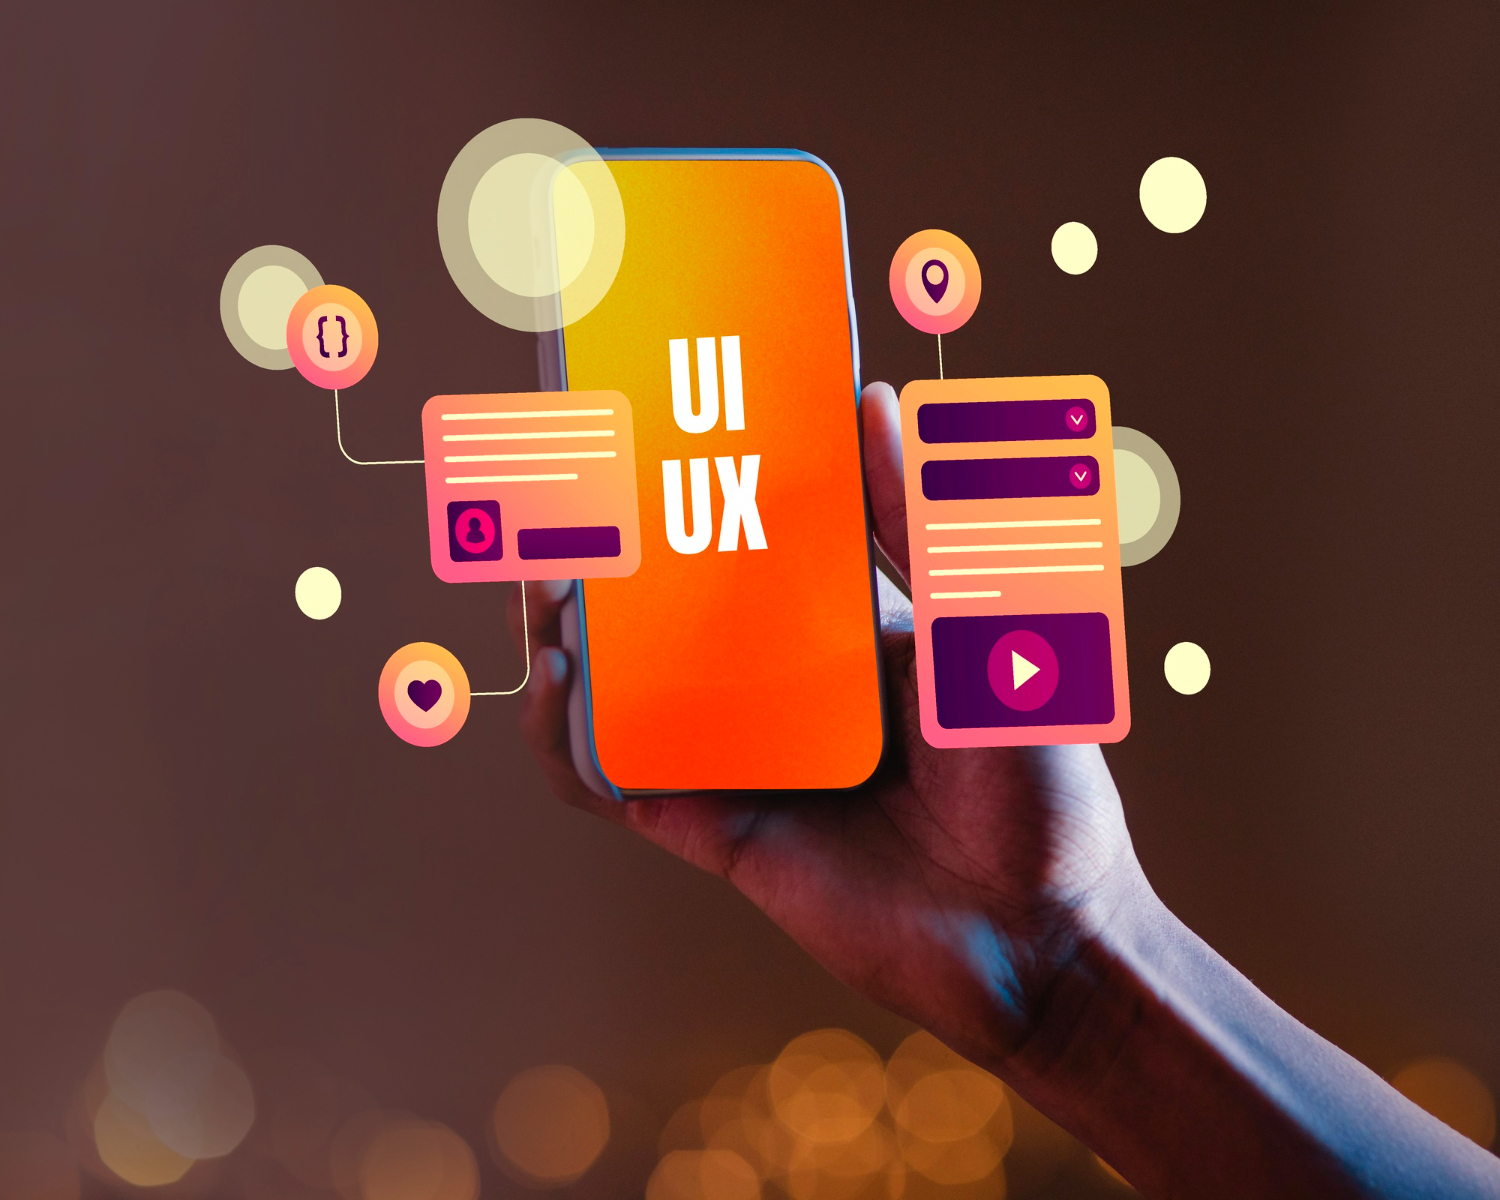 Gli accordion sono un elemento di UX importante per ottimizzare la navigazione mobile